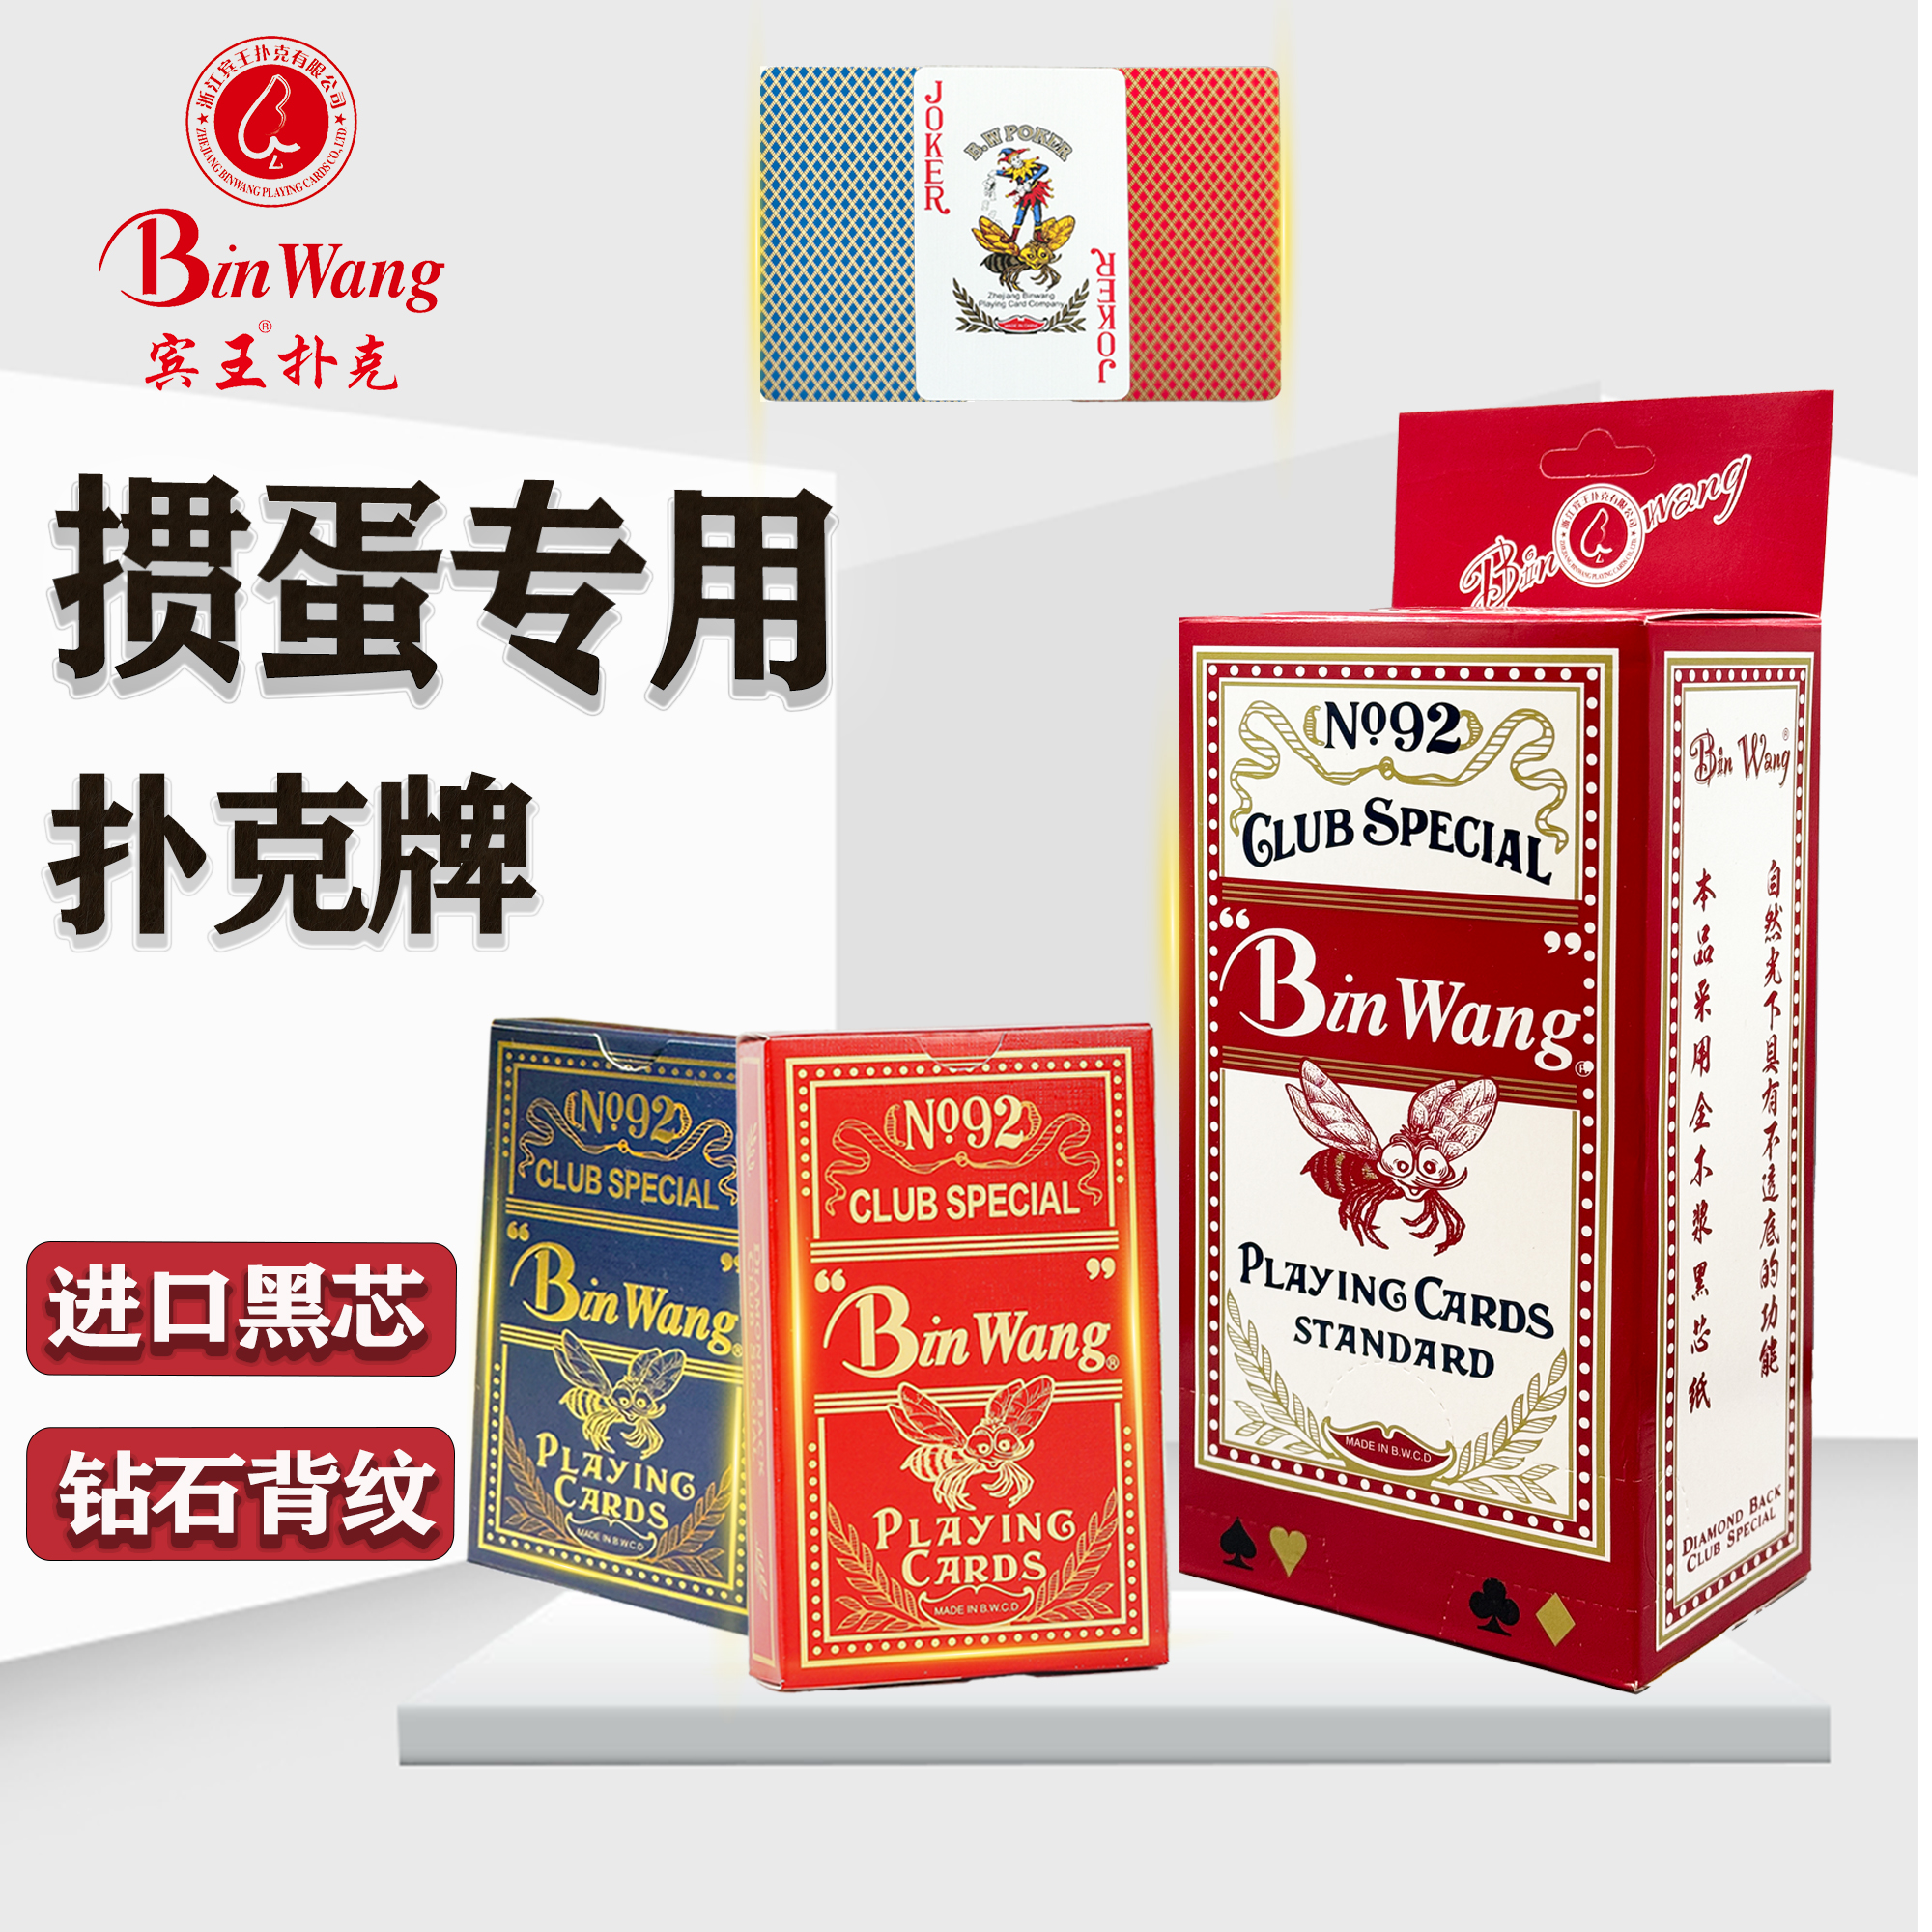 宾王掼蛋专用扑克竞技比赛专用扑克牌整条知名品牌